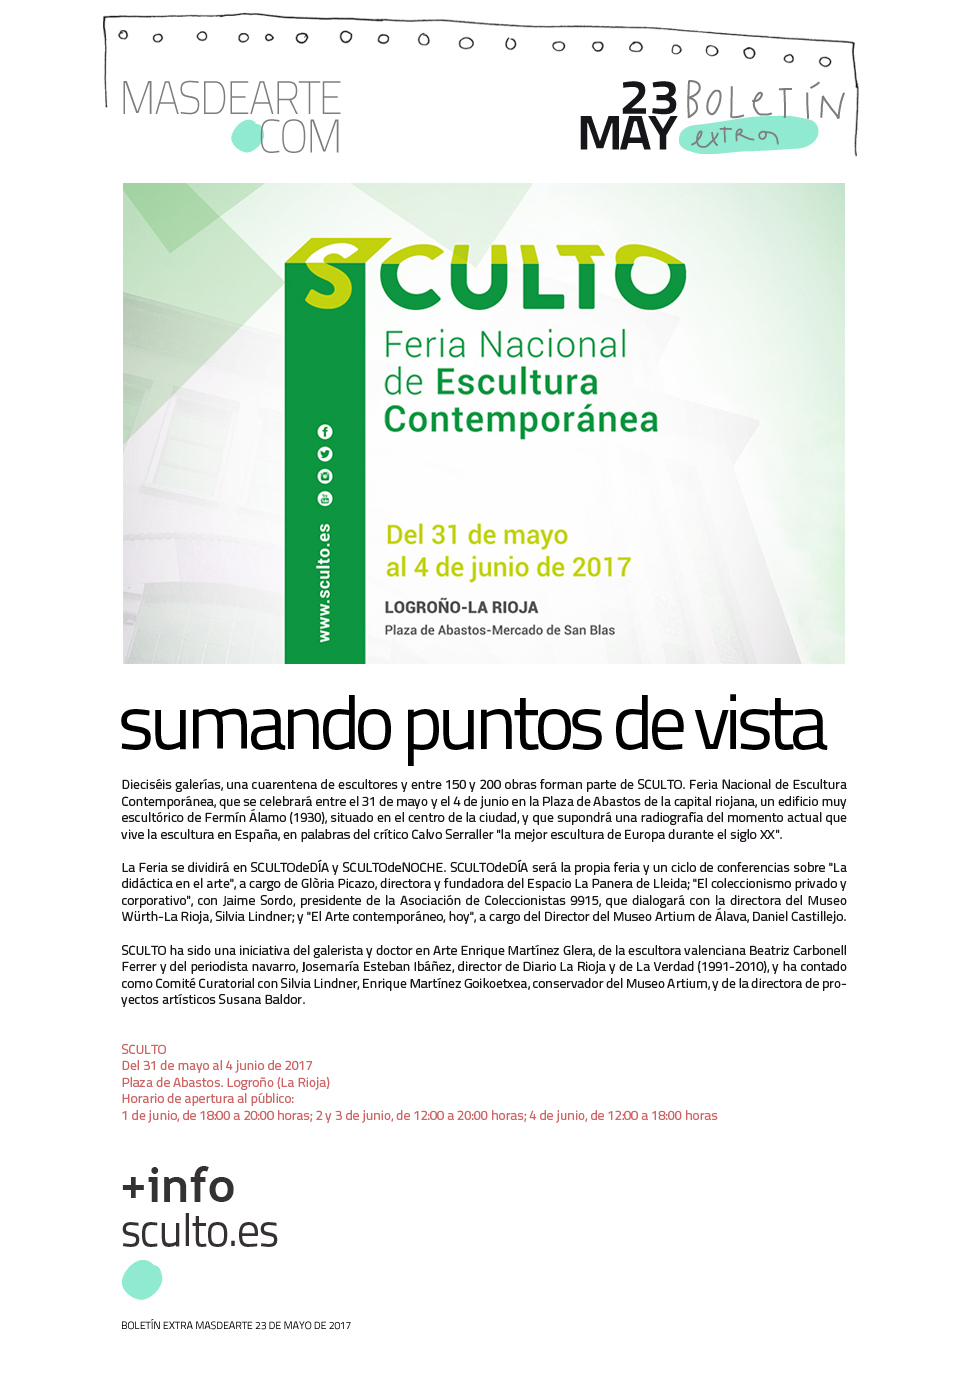 SCULTO, primera feria de escultura de España. Del 31 de mayo al 4 de junio de 2017. Plaza de Abastos de Logroño